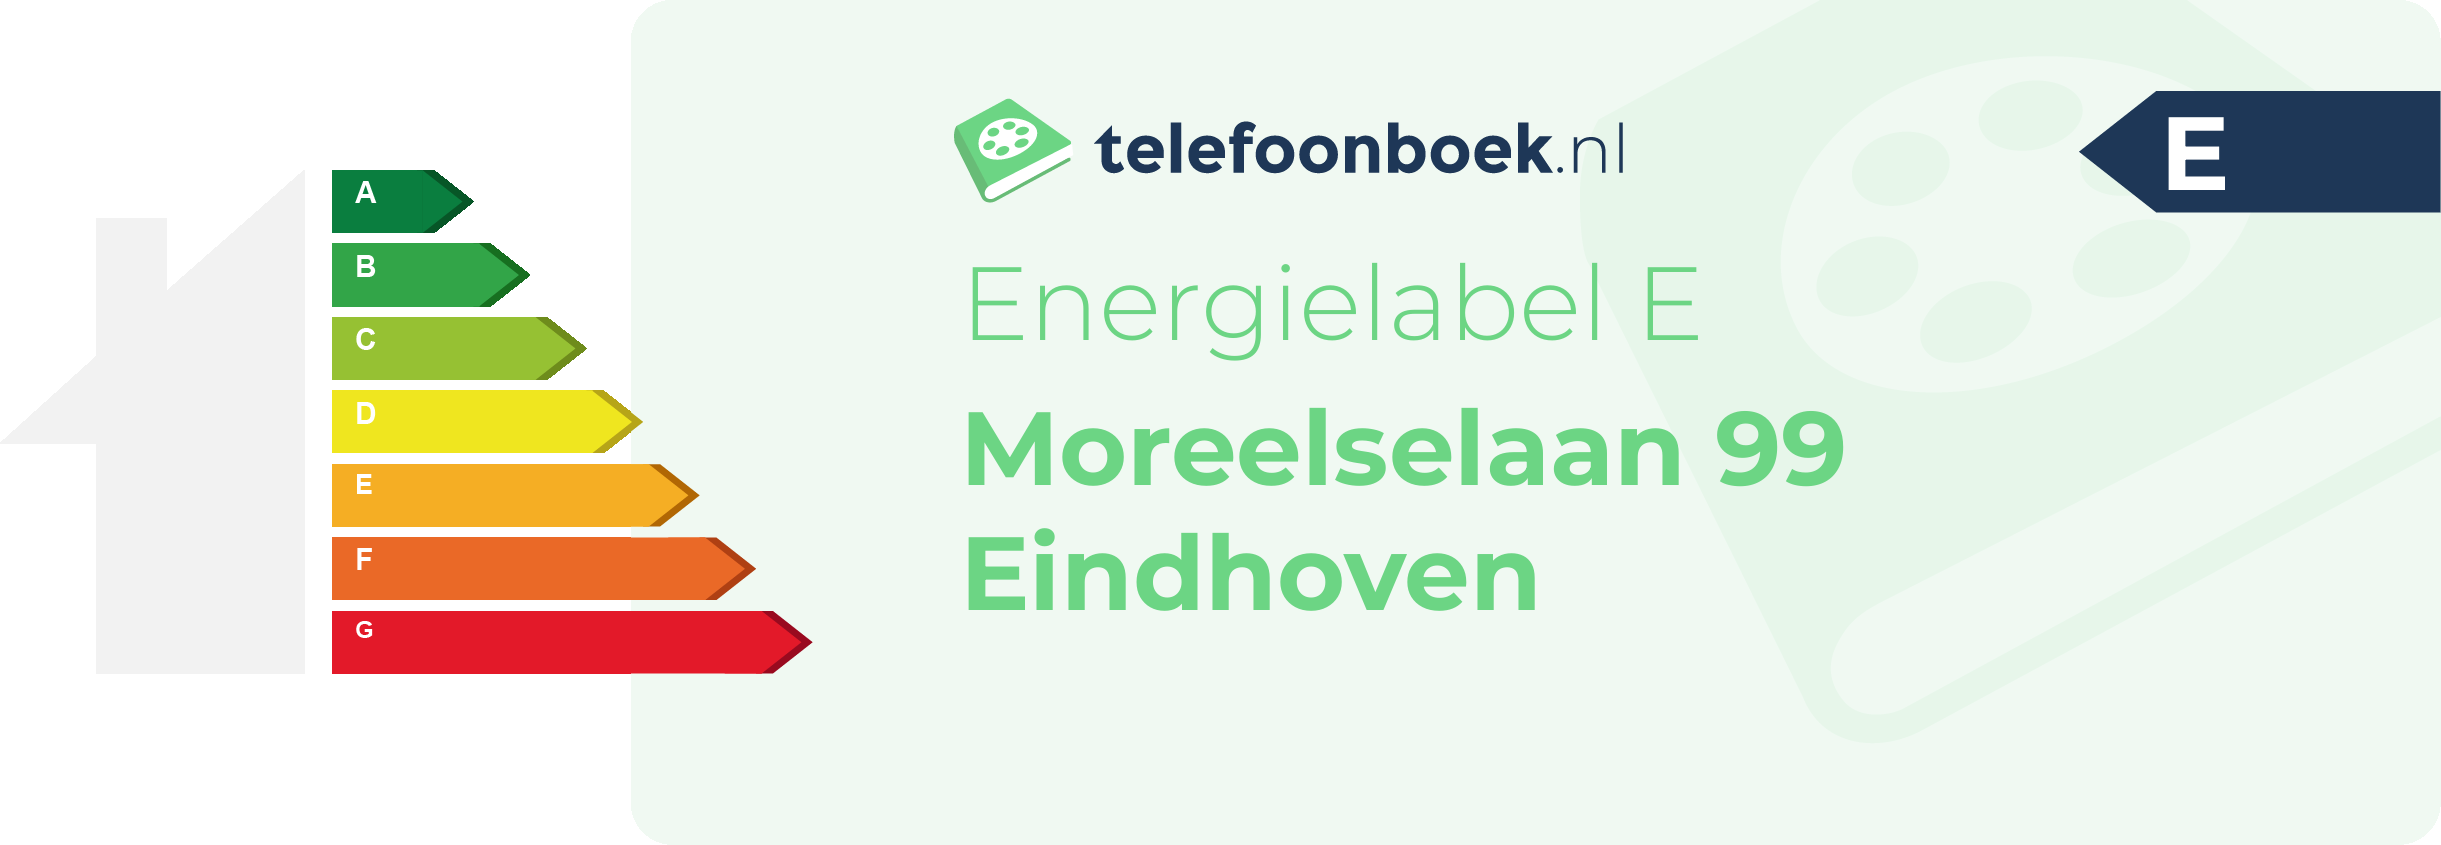 Energielabel Moreelselaan 99 Eindhoven